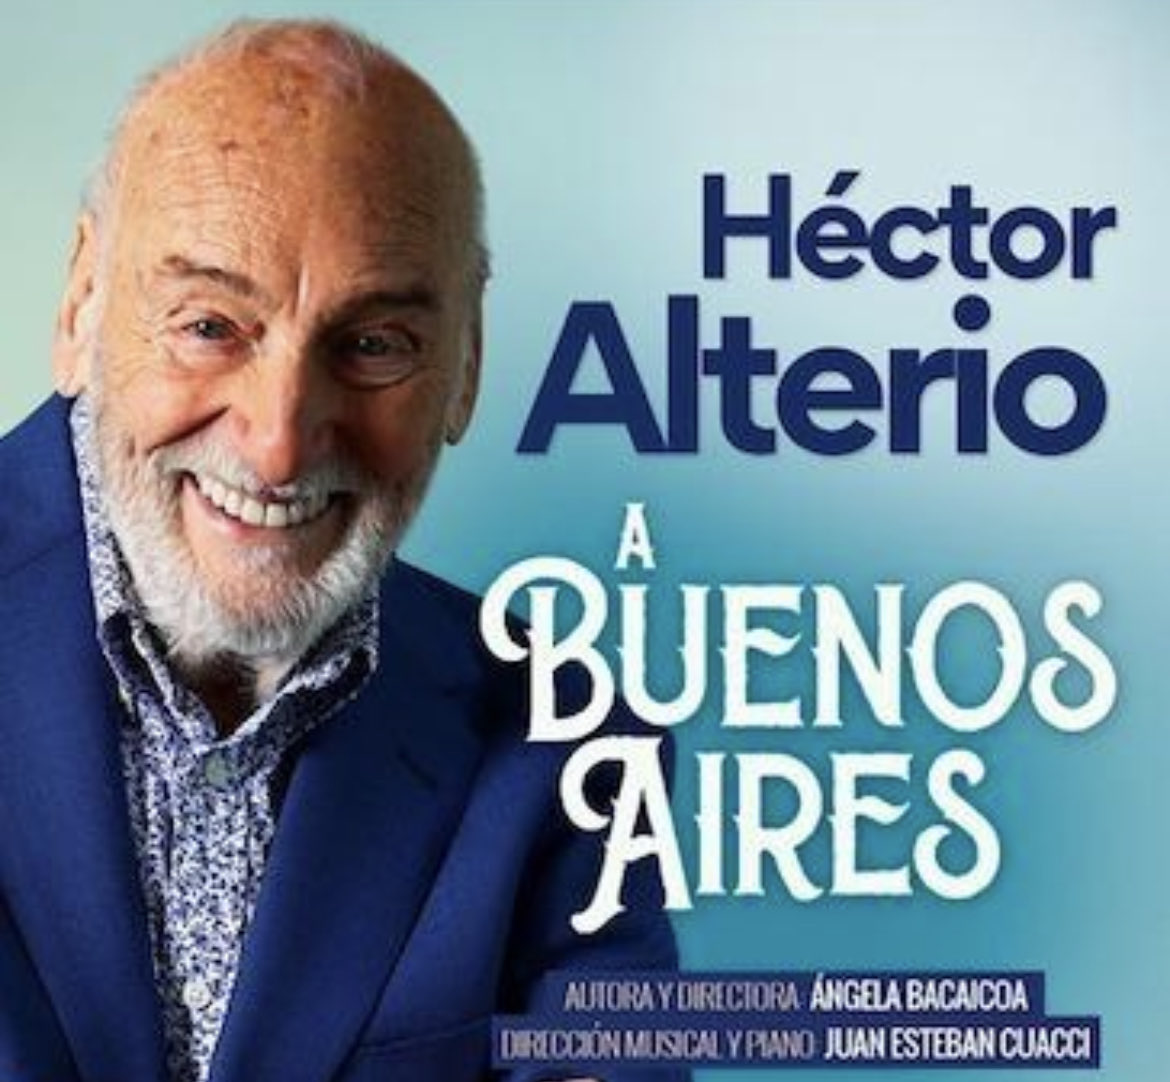 🛬 Bienvenido para este regreso a los escenarios de Buenos Aires! Únicas funciones en el teatro Astros, Av. Corrientes 746.